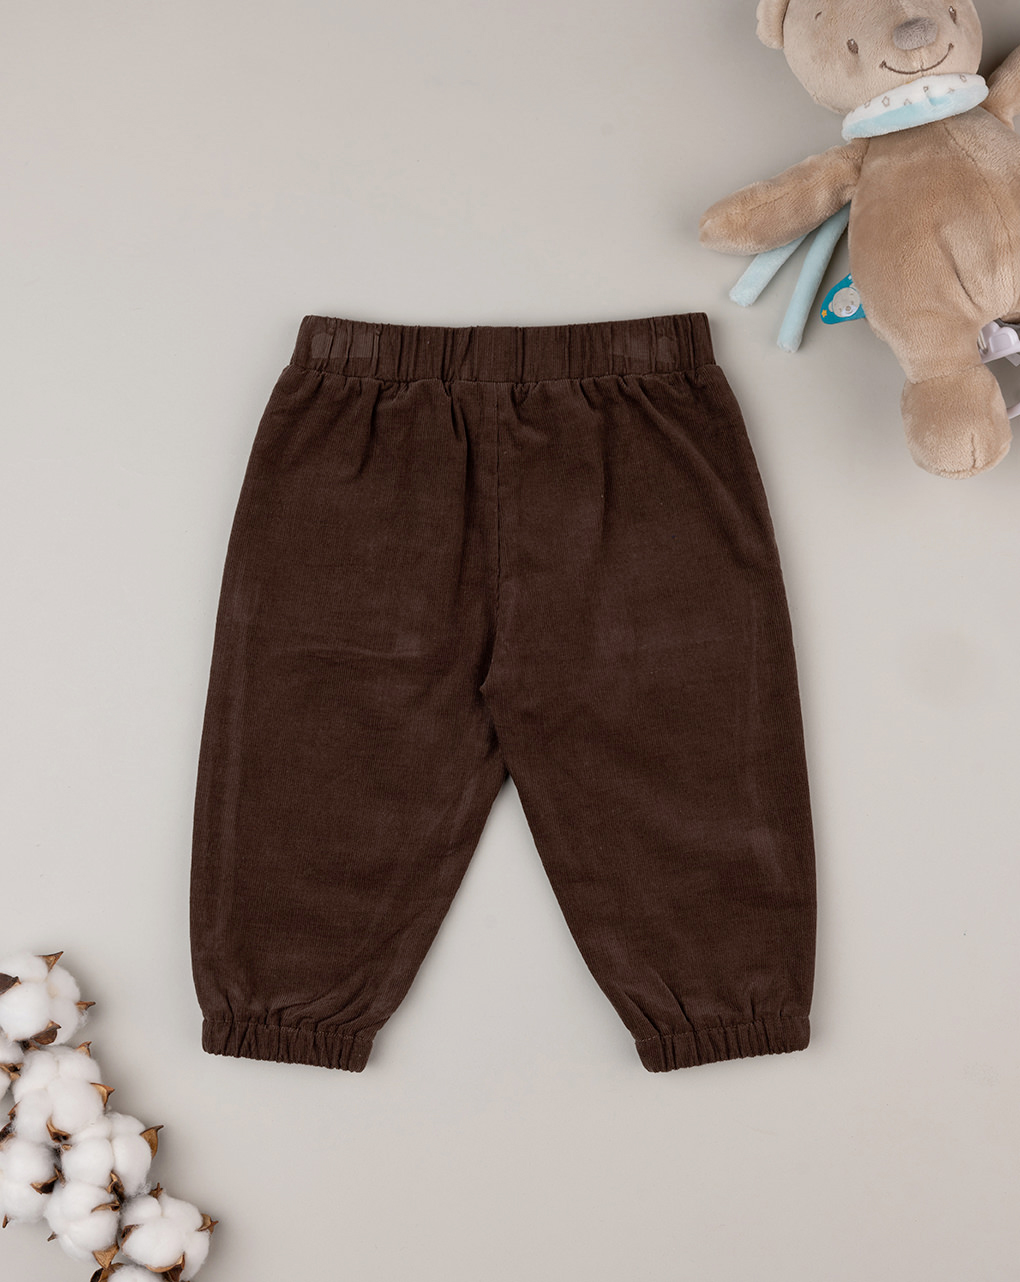 Pantalones de terciopelo marrón para bebé - Prénatal